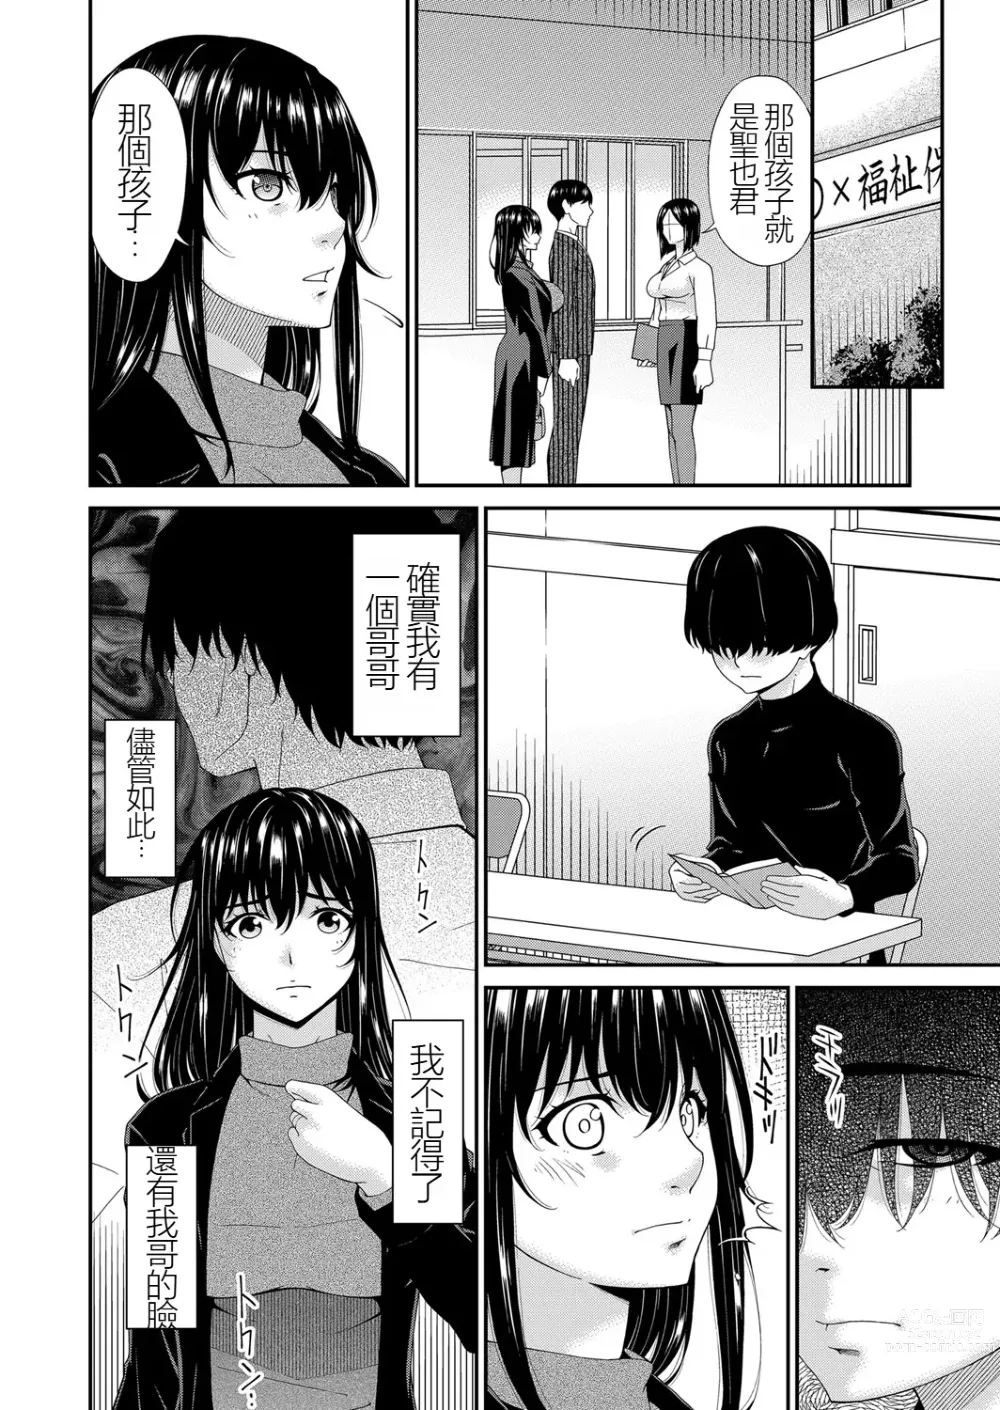 Page 6 of manga Saiin Kazoku Completed